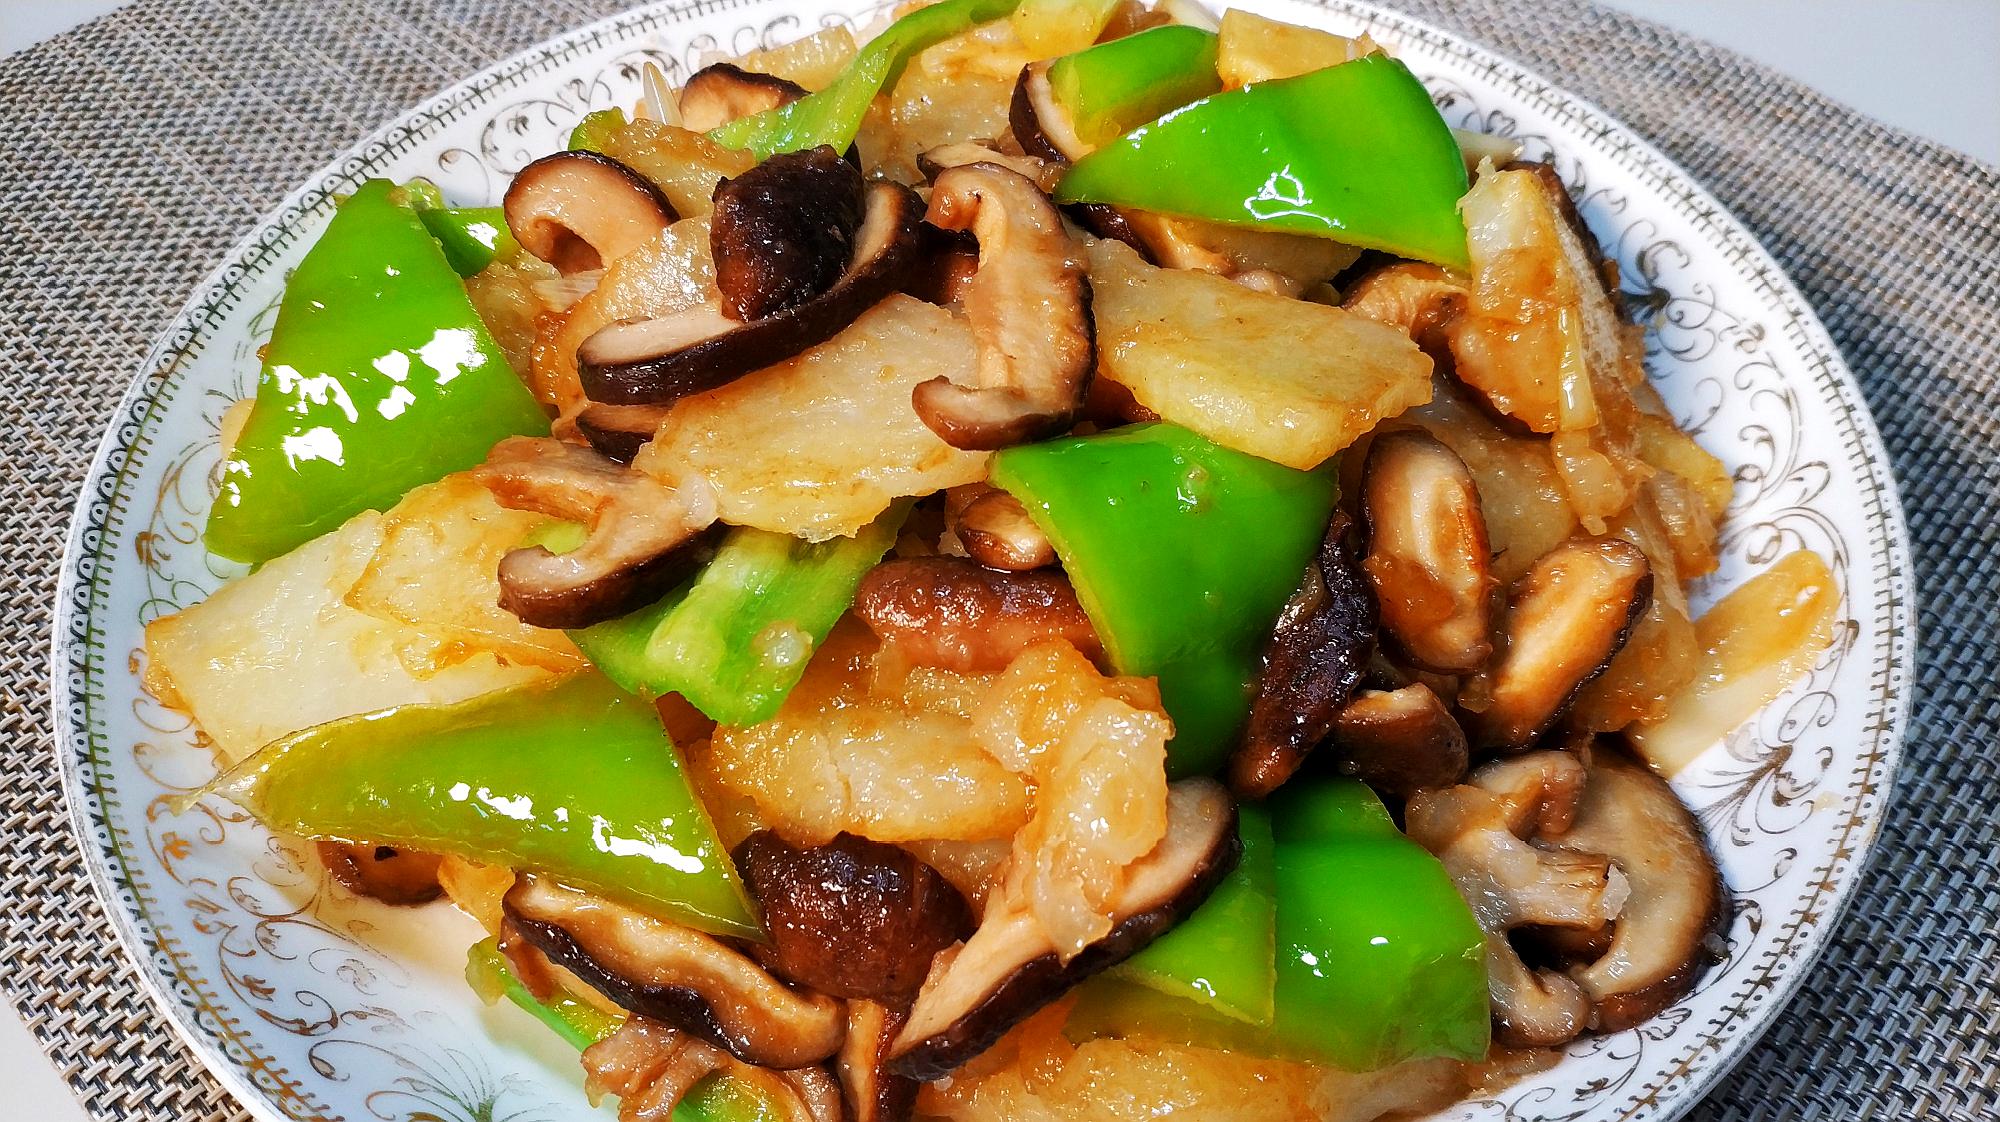 土豆搭配香菇,最美味的做法,好吃不怕长胖,天天吃都不腻